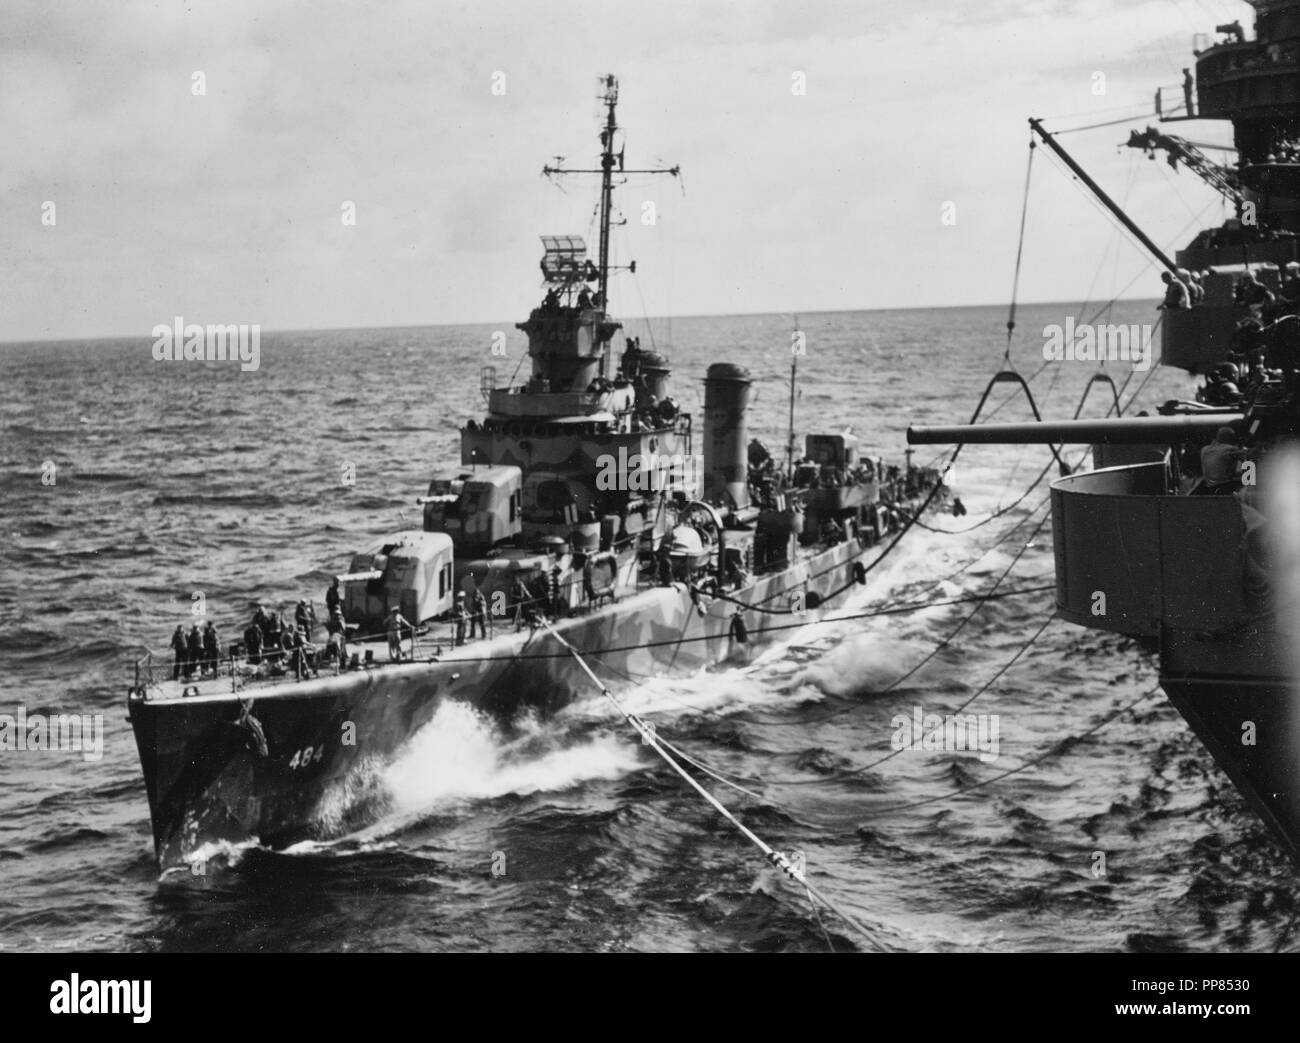 USS Buchanan (DD-484) avitaillement de l'USS Wasp (CV-7) en route vers la zone d'invasion, Guadalcanal-Tulagi 3 août 1942. Buchanan est peint en camouflage mesure 12 (modification). Banque D'Images